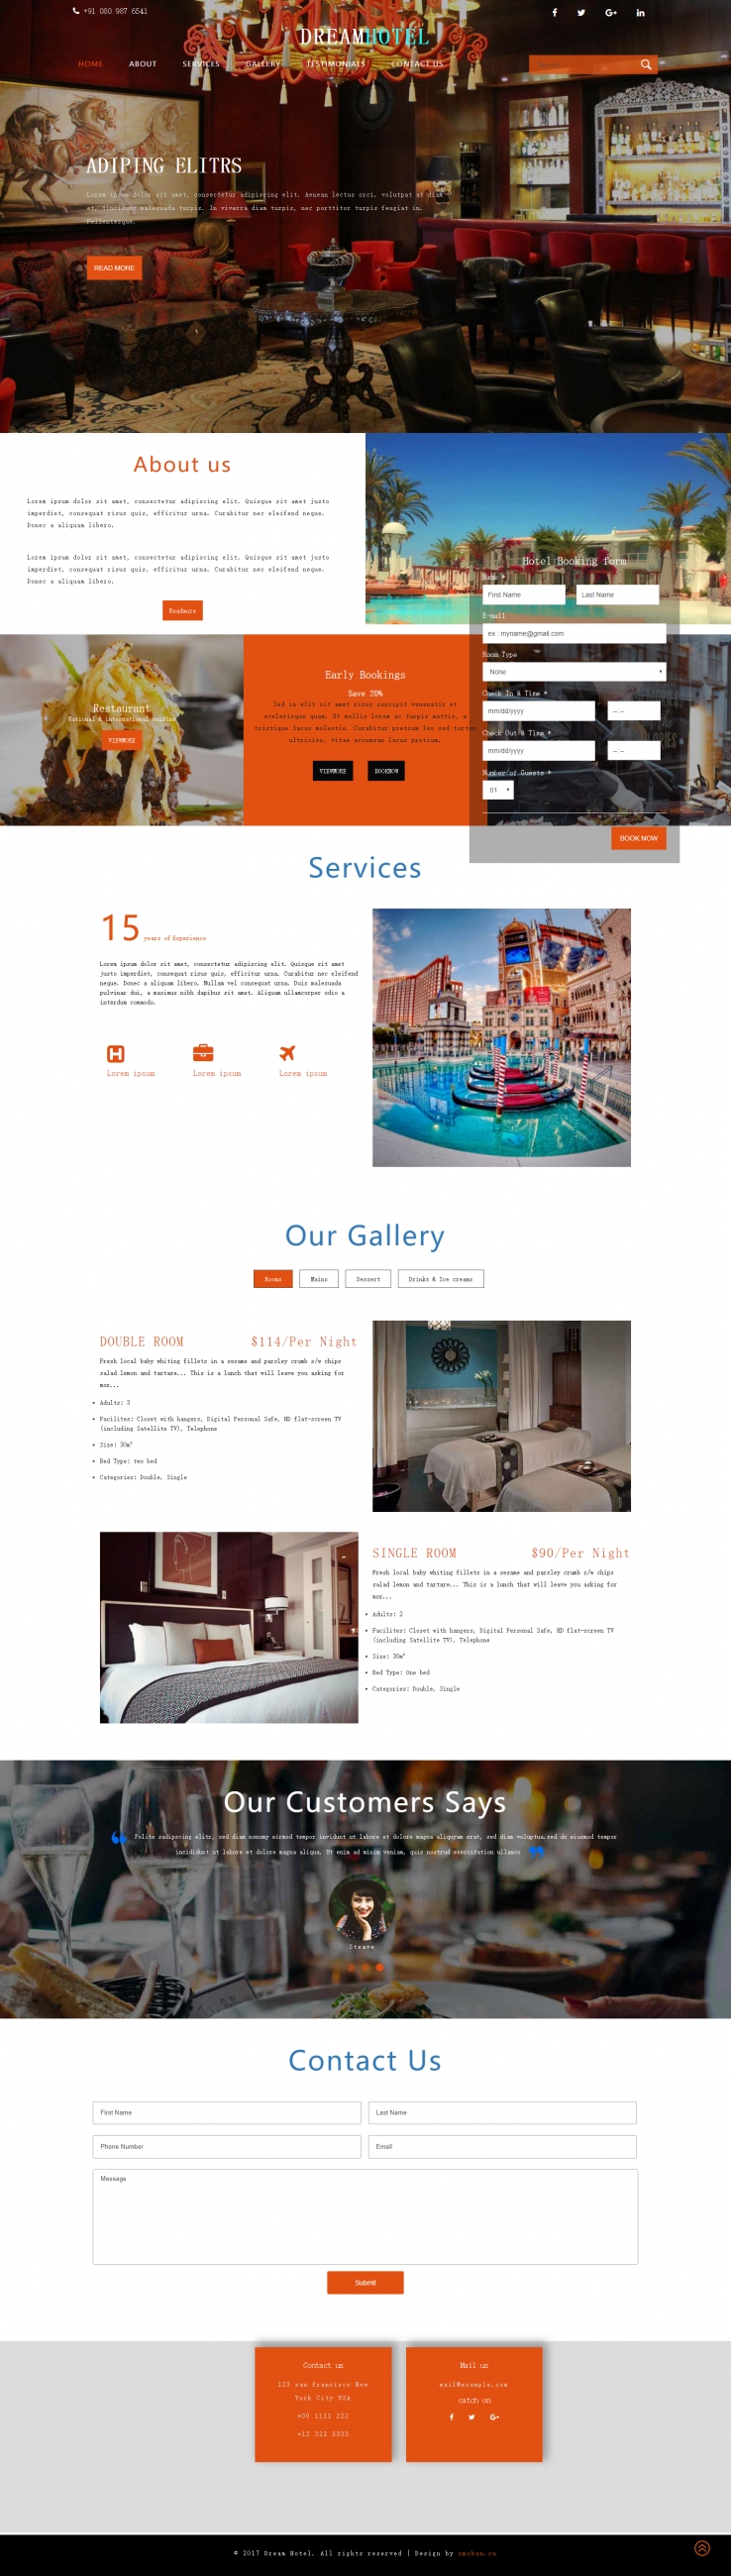 橙色欧美风格的预订酒店企业网站源码下载